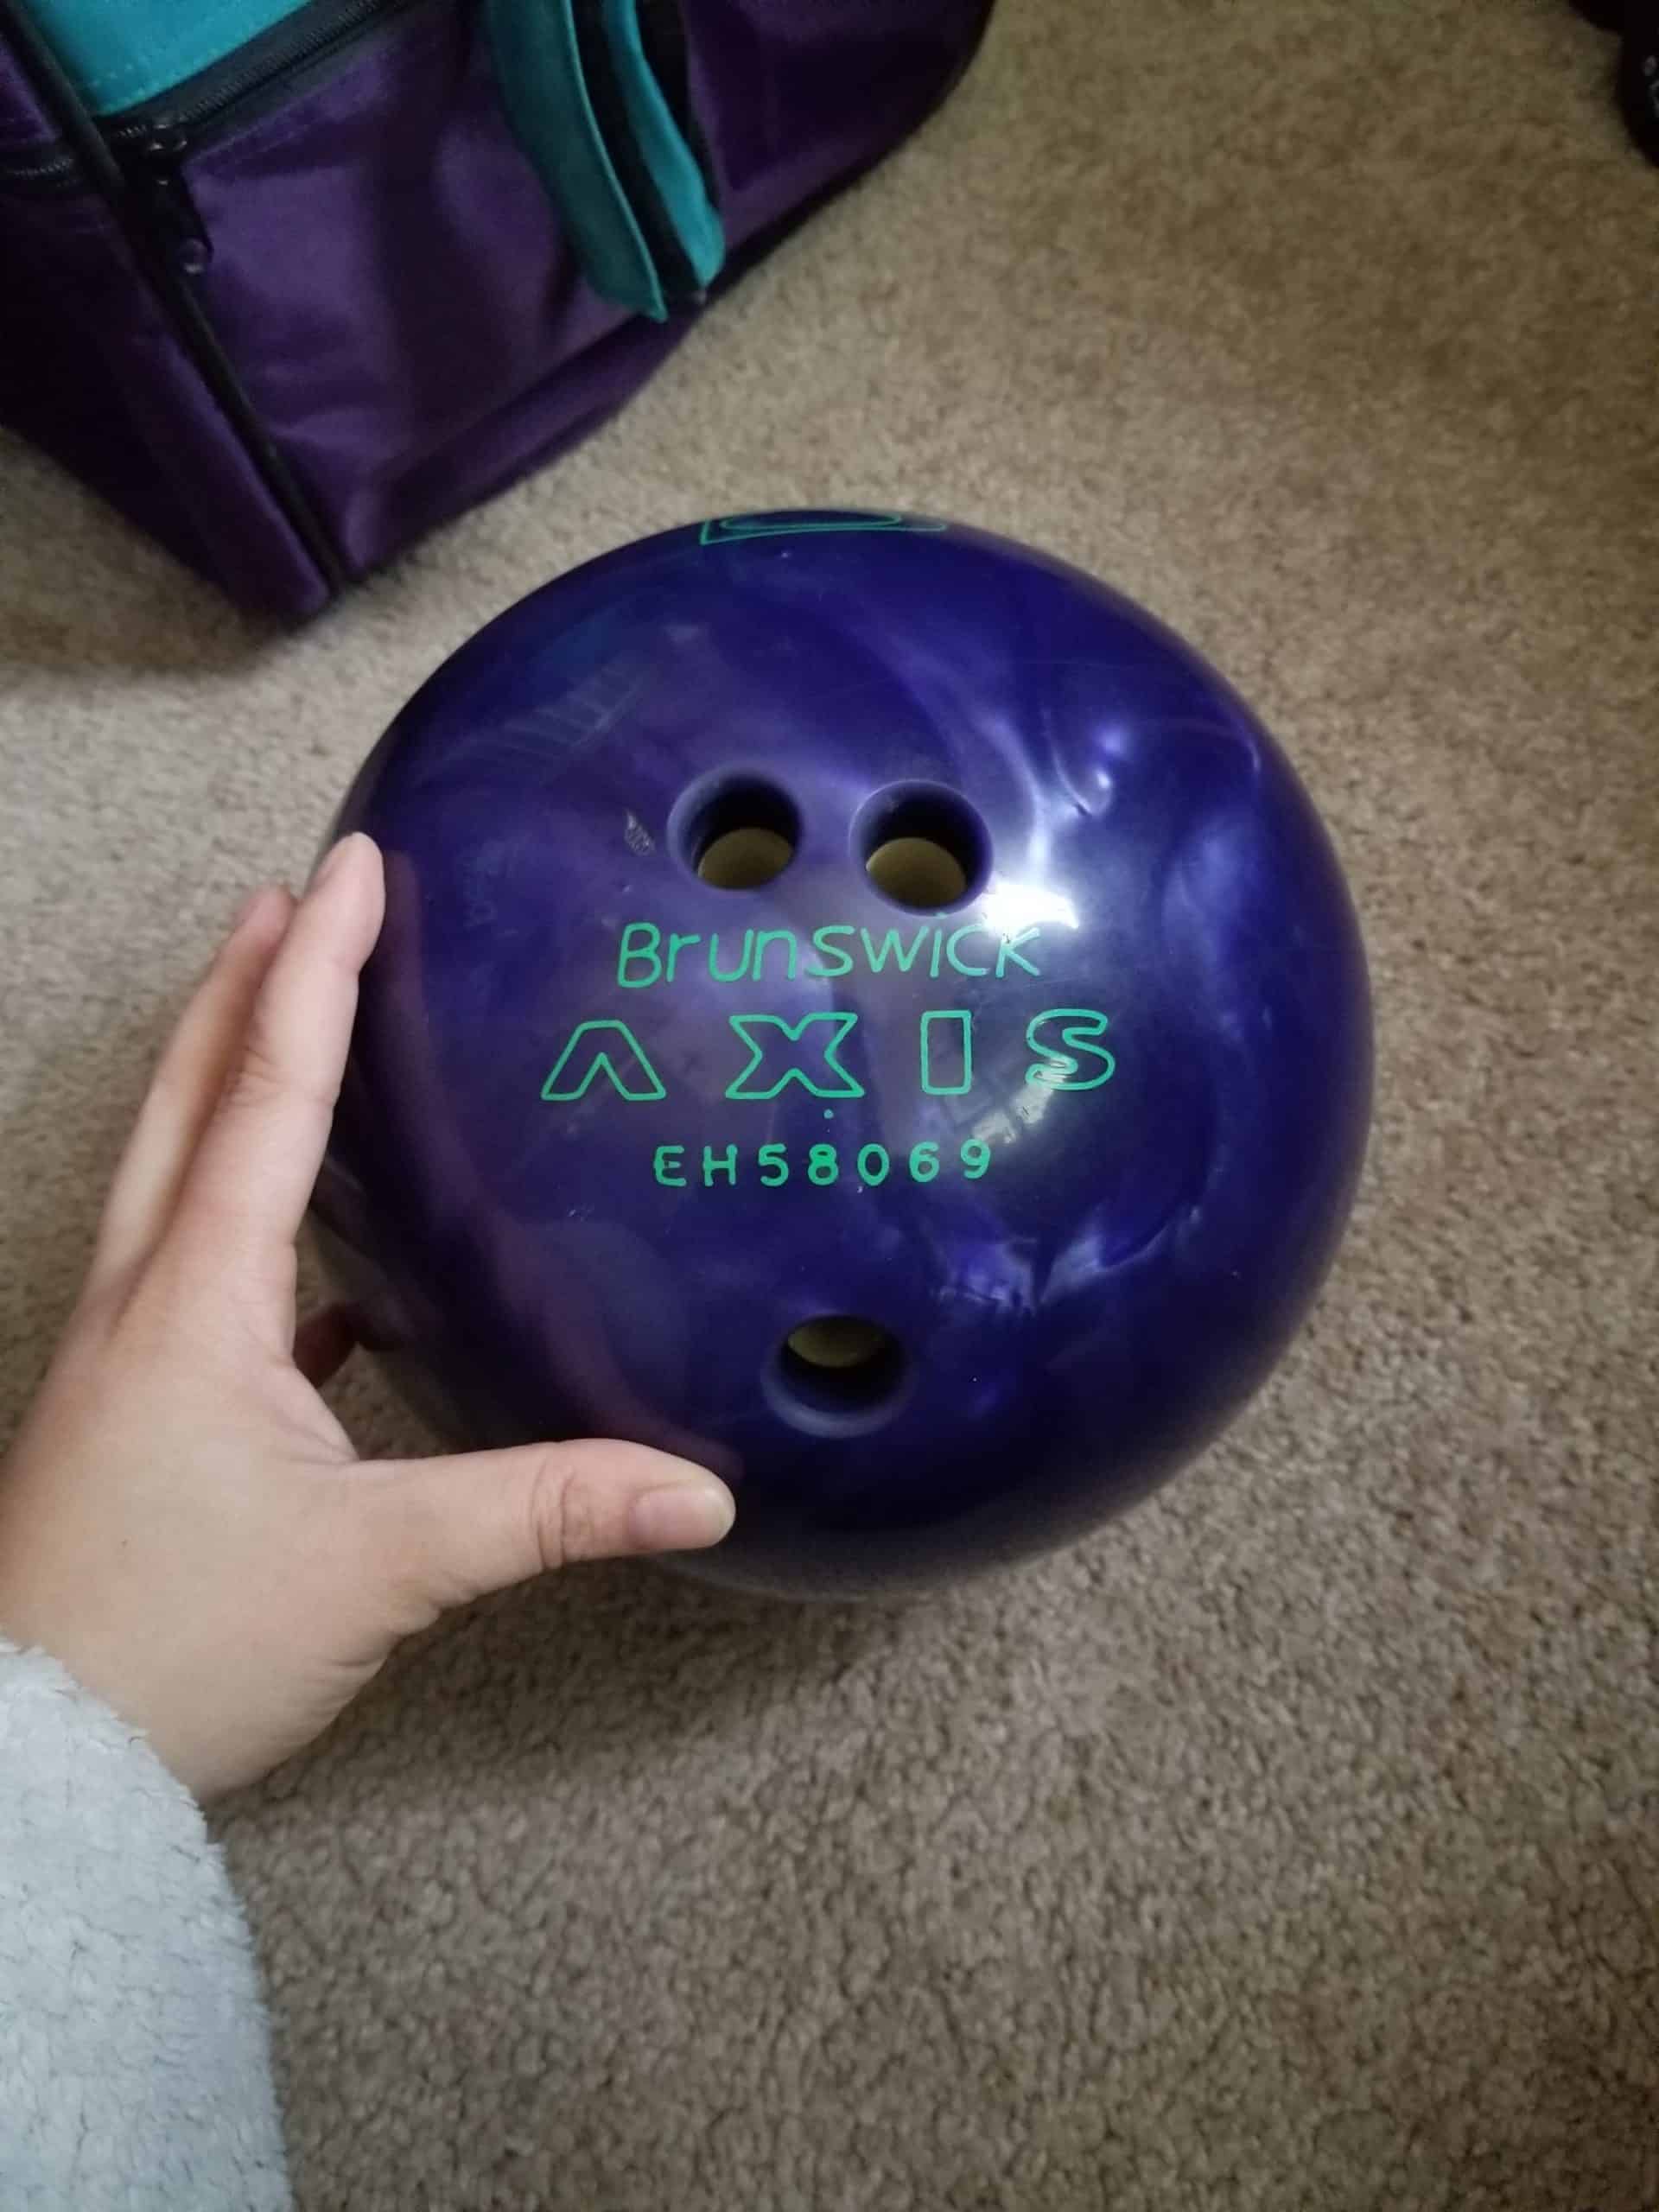 plastic bowling ball